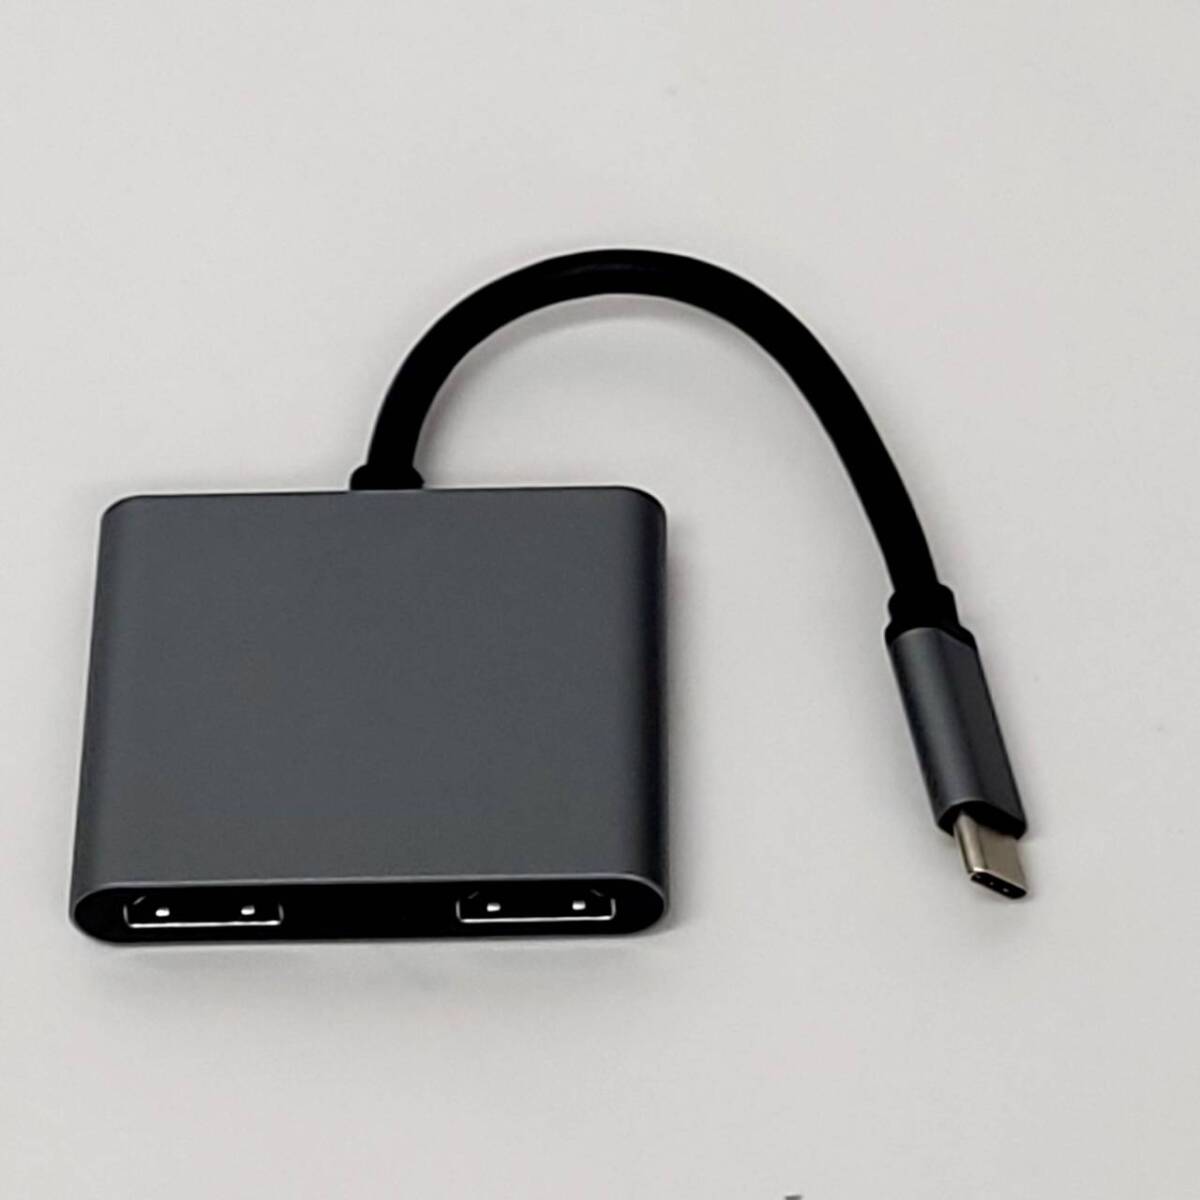 ★【在庫処分価格】USB-C HUB HDMI 変換アダプタ 4-in-1 Type-C 分配器 拡張モード ハブ☆C04-650aの画像4